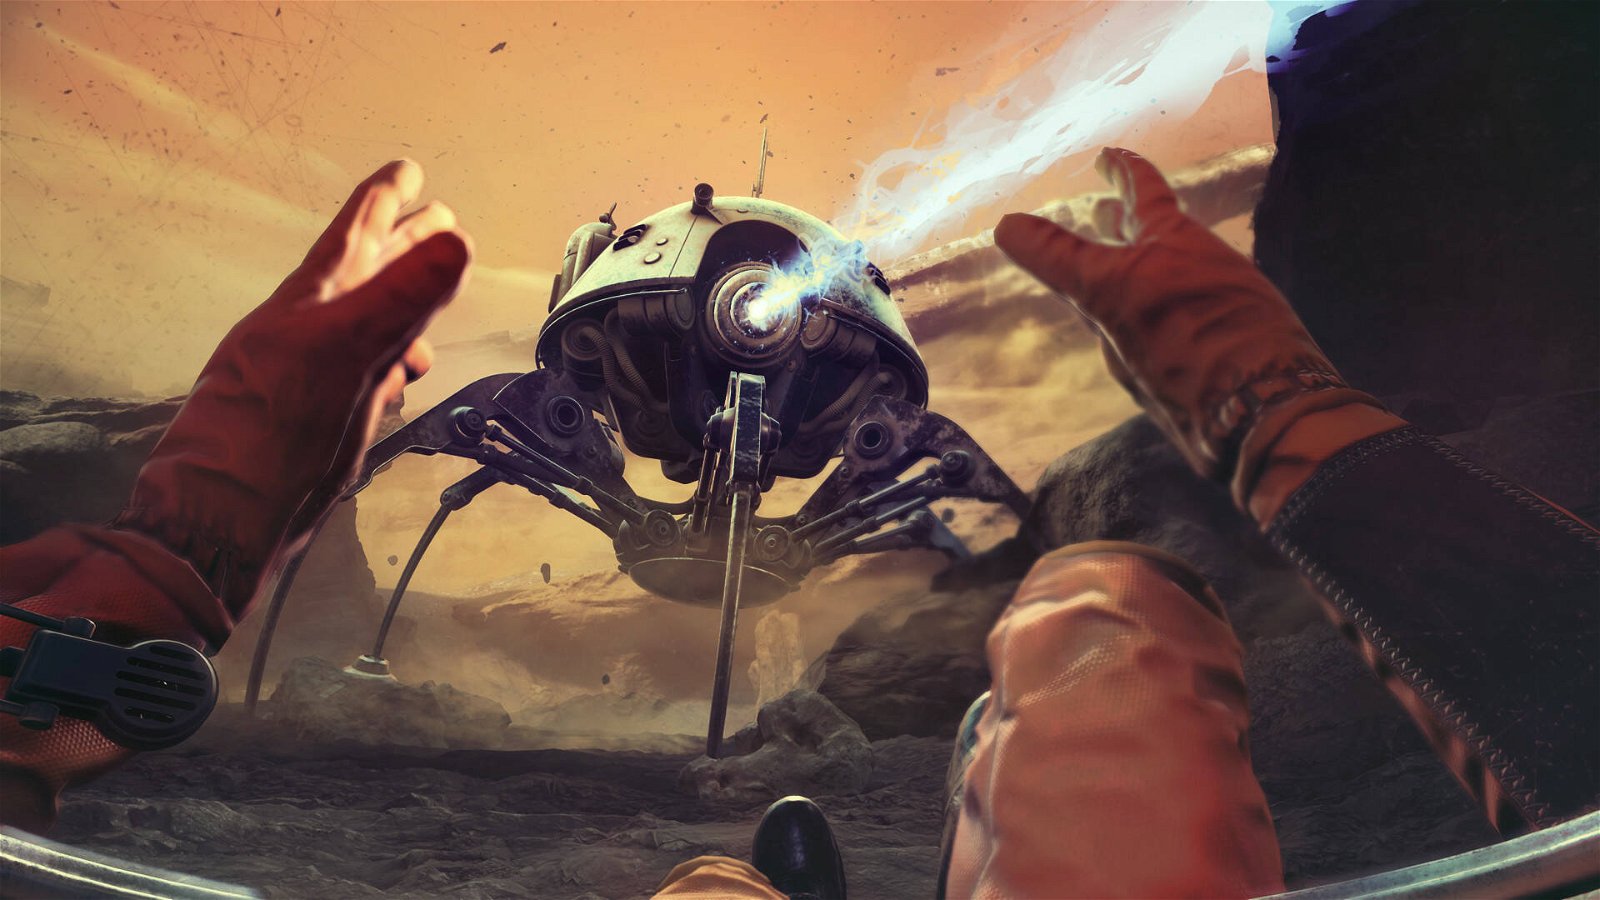 Immagine di The Invincible si mostra in azione, sarà una nuova avventura spaziale da non perdere